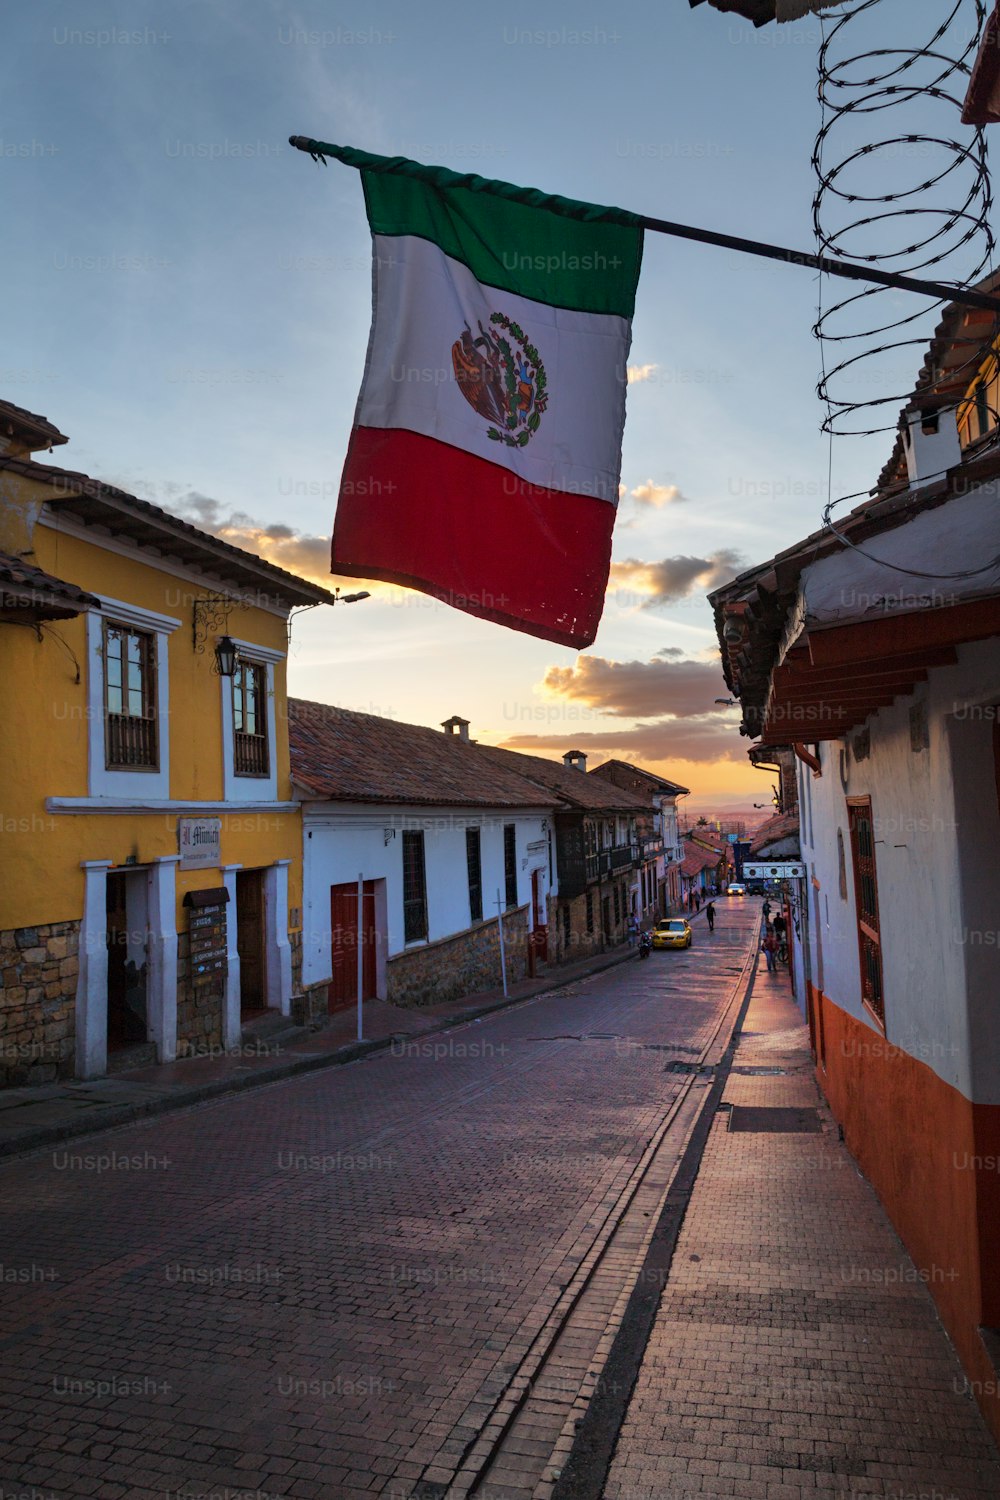 Die mexikanische Flagge über einer Kopfsteinpflasterstraße im Stadtteil Candelaria in Bogotá, Kolumbien